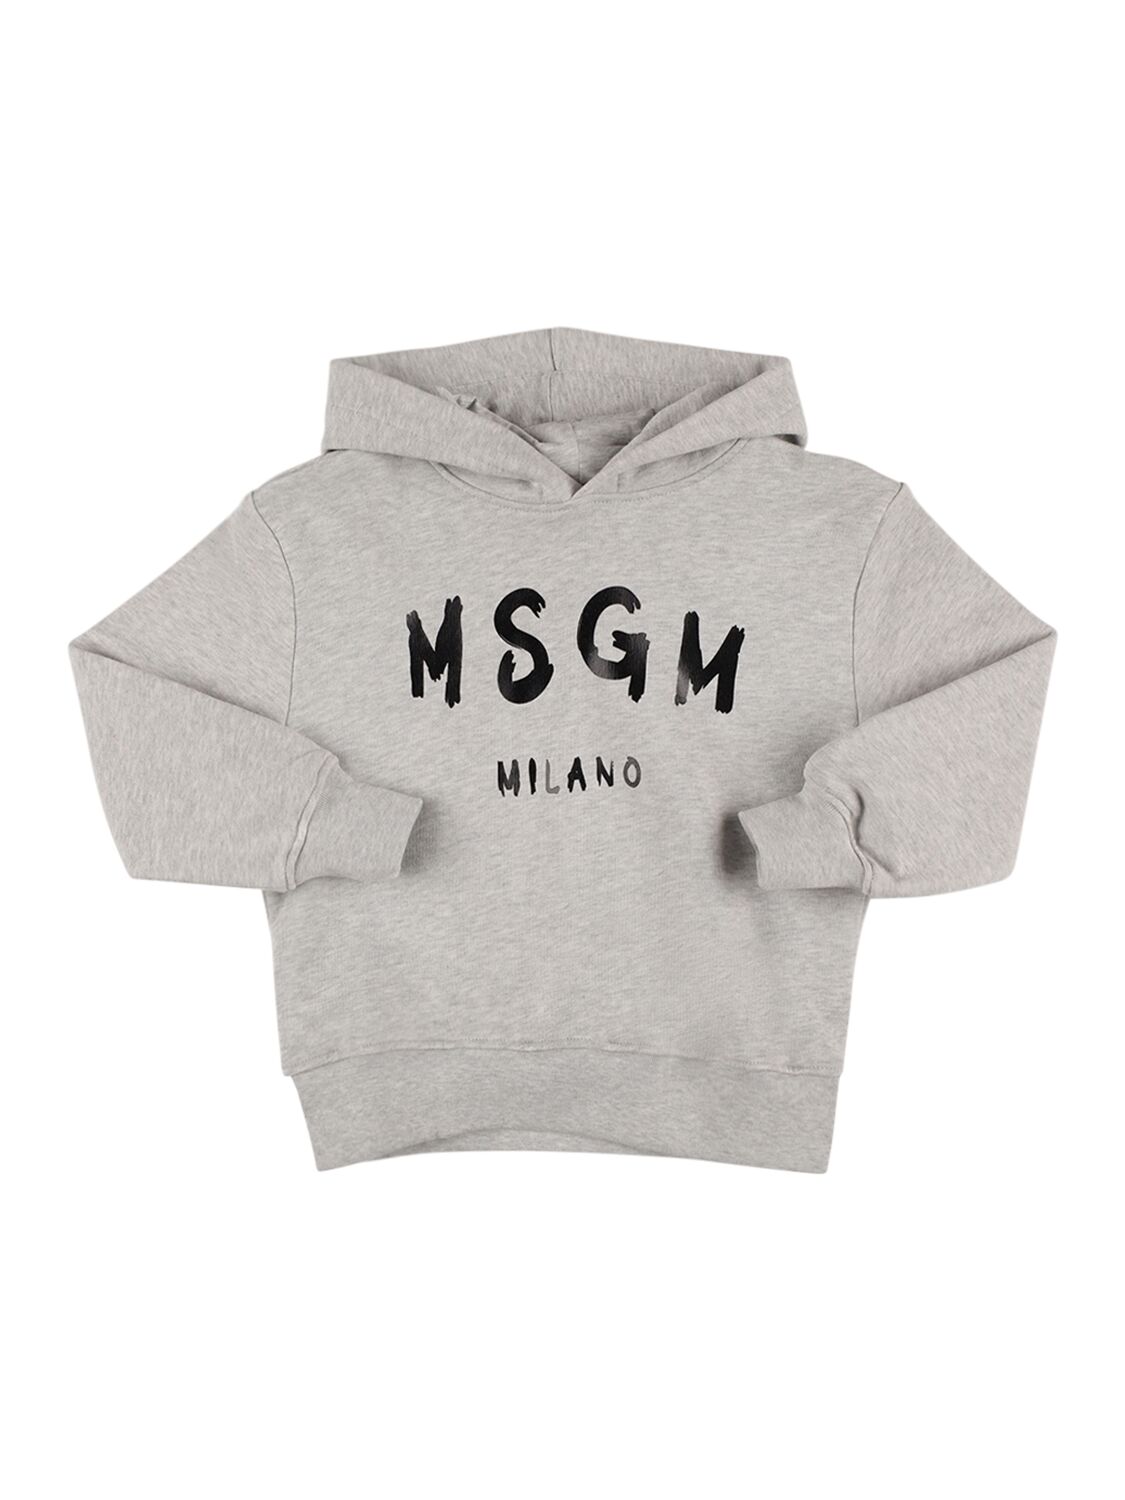 Msgm Kids' Printed Logo Hooded Sweatshirt In Grey